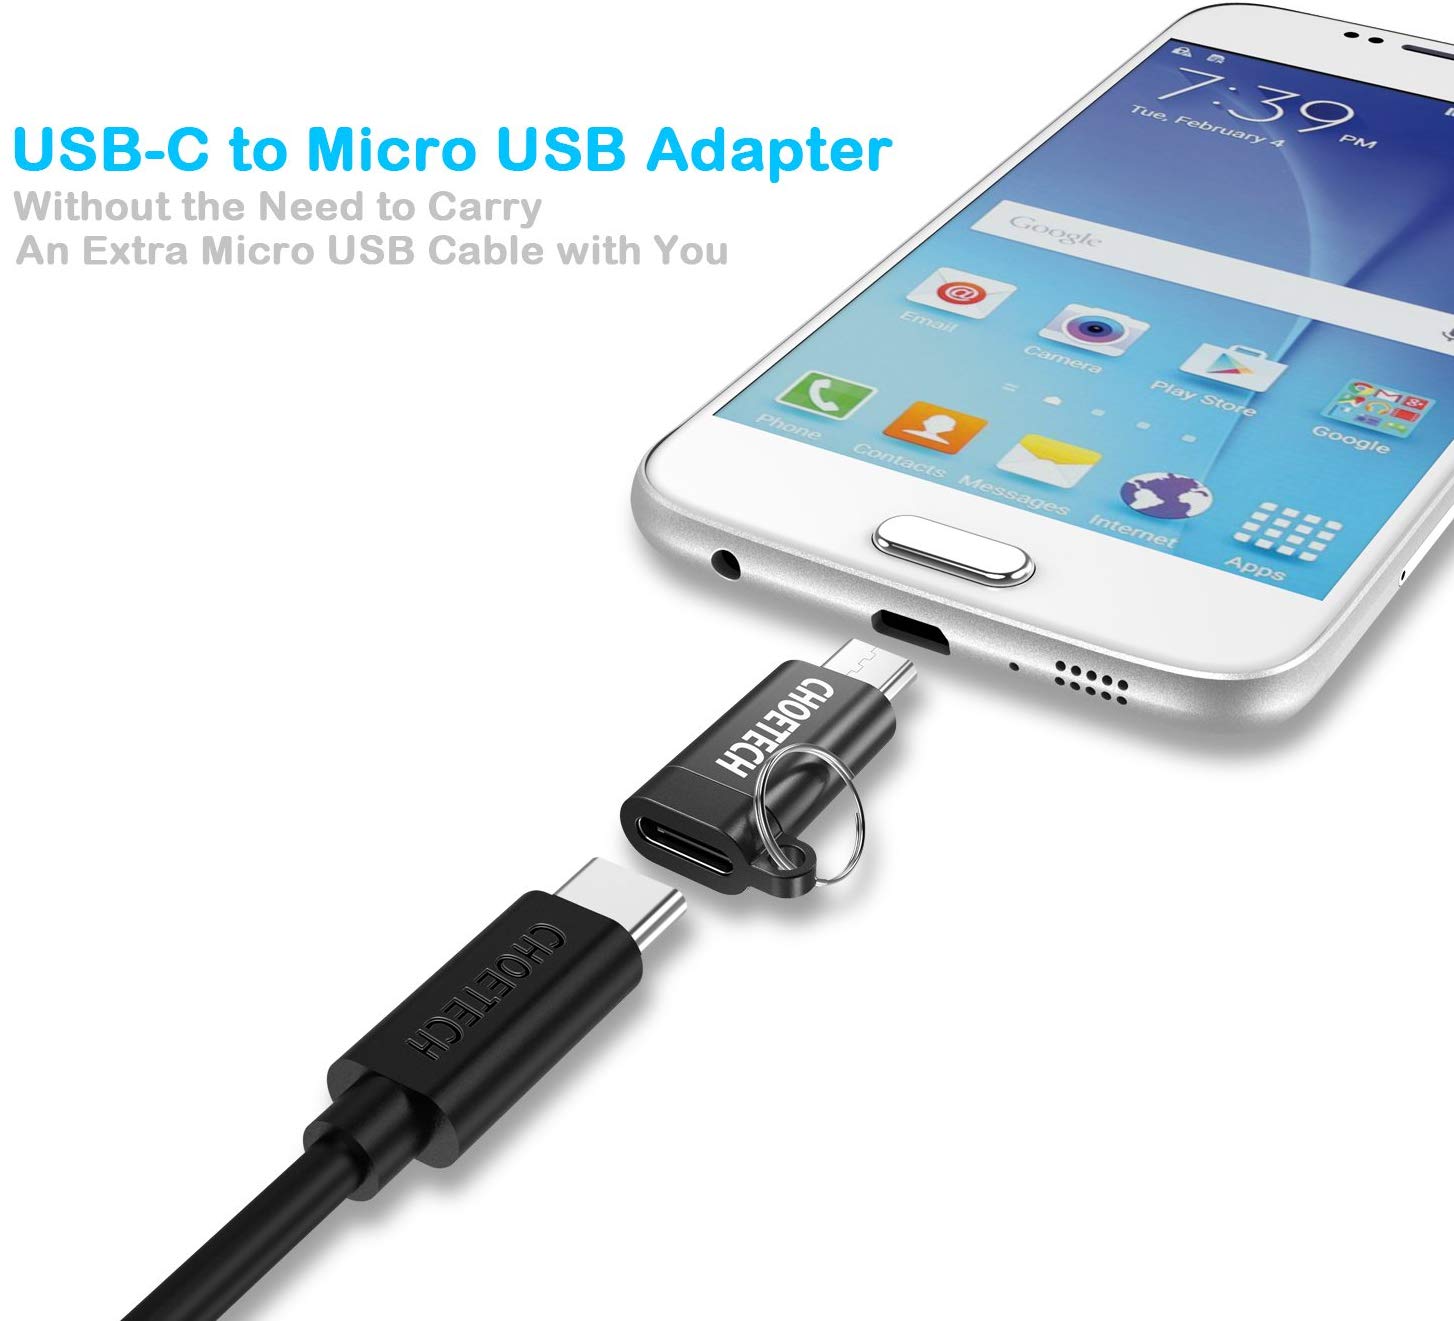 PD-4CM CHOETECH USB-C auf Micro-USB-Adapter, 4er-Pack Typ-C-Buchse auf Micro-USB-Stecker, Konvertierungsanschluss, unterstützt Lade- und Datensynchronisierung, kompatibel mit Samsung Galaxy S7/S7 Edge, Nexus 5/6 und Micro-USB-Geräten